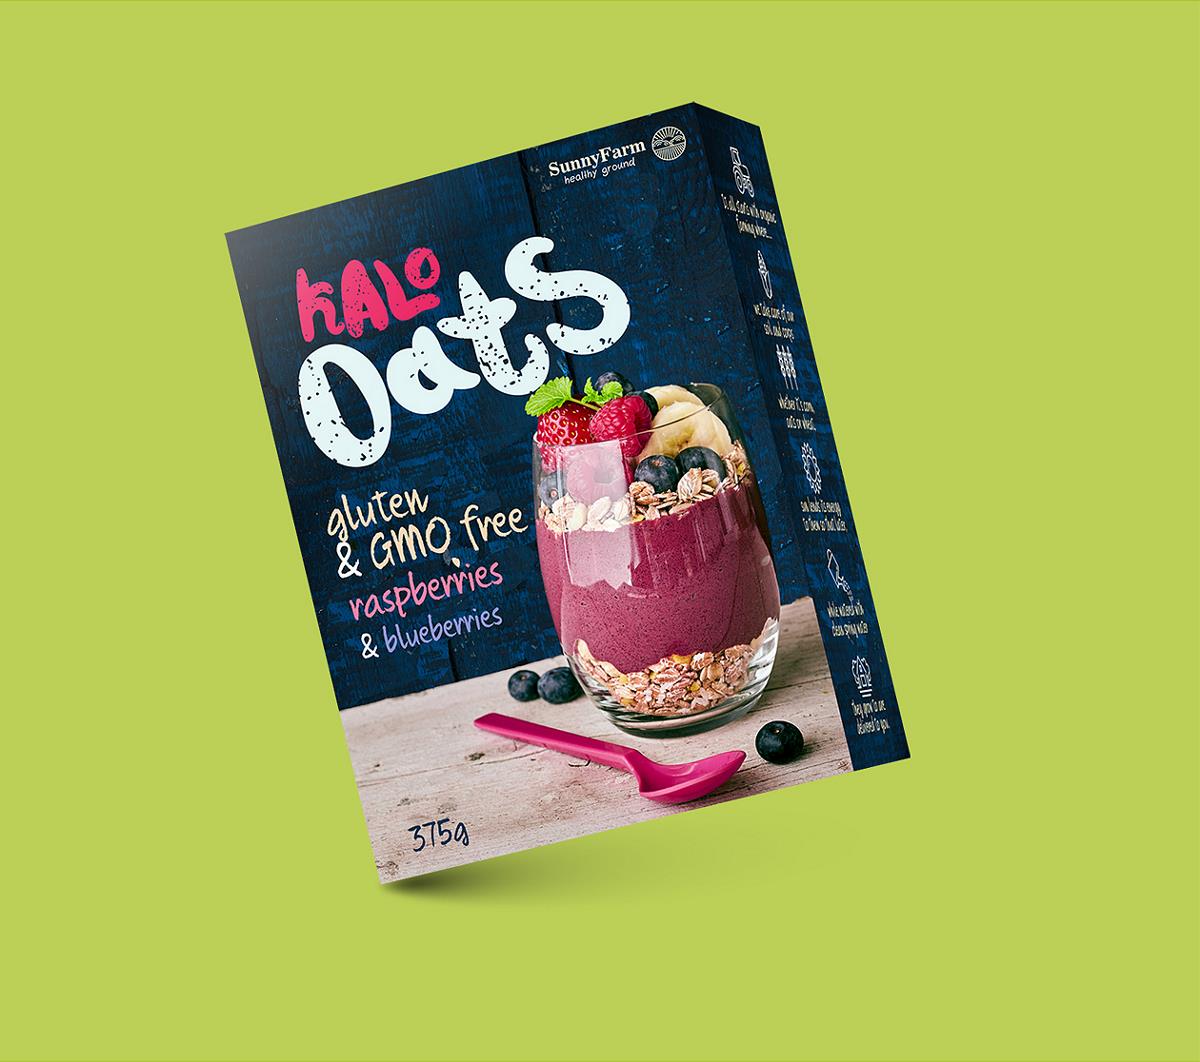 Kalo Cereals & Oats and new packaging包装设计| 摩尼视觉分享